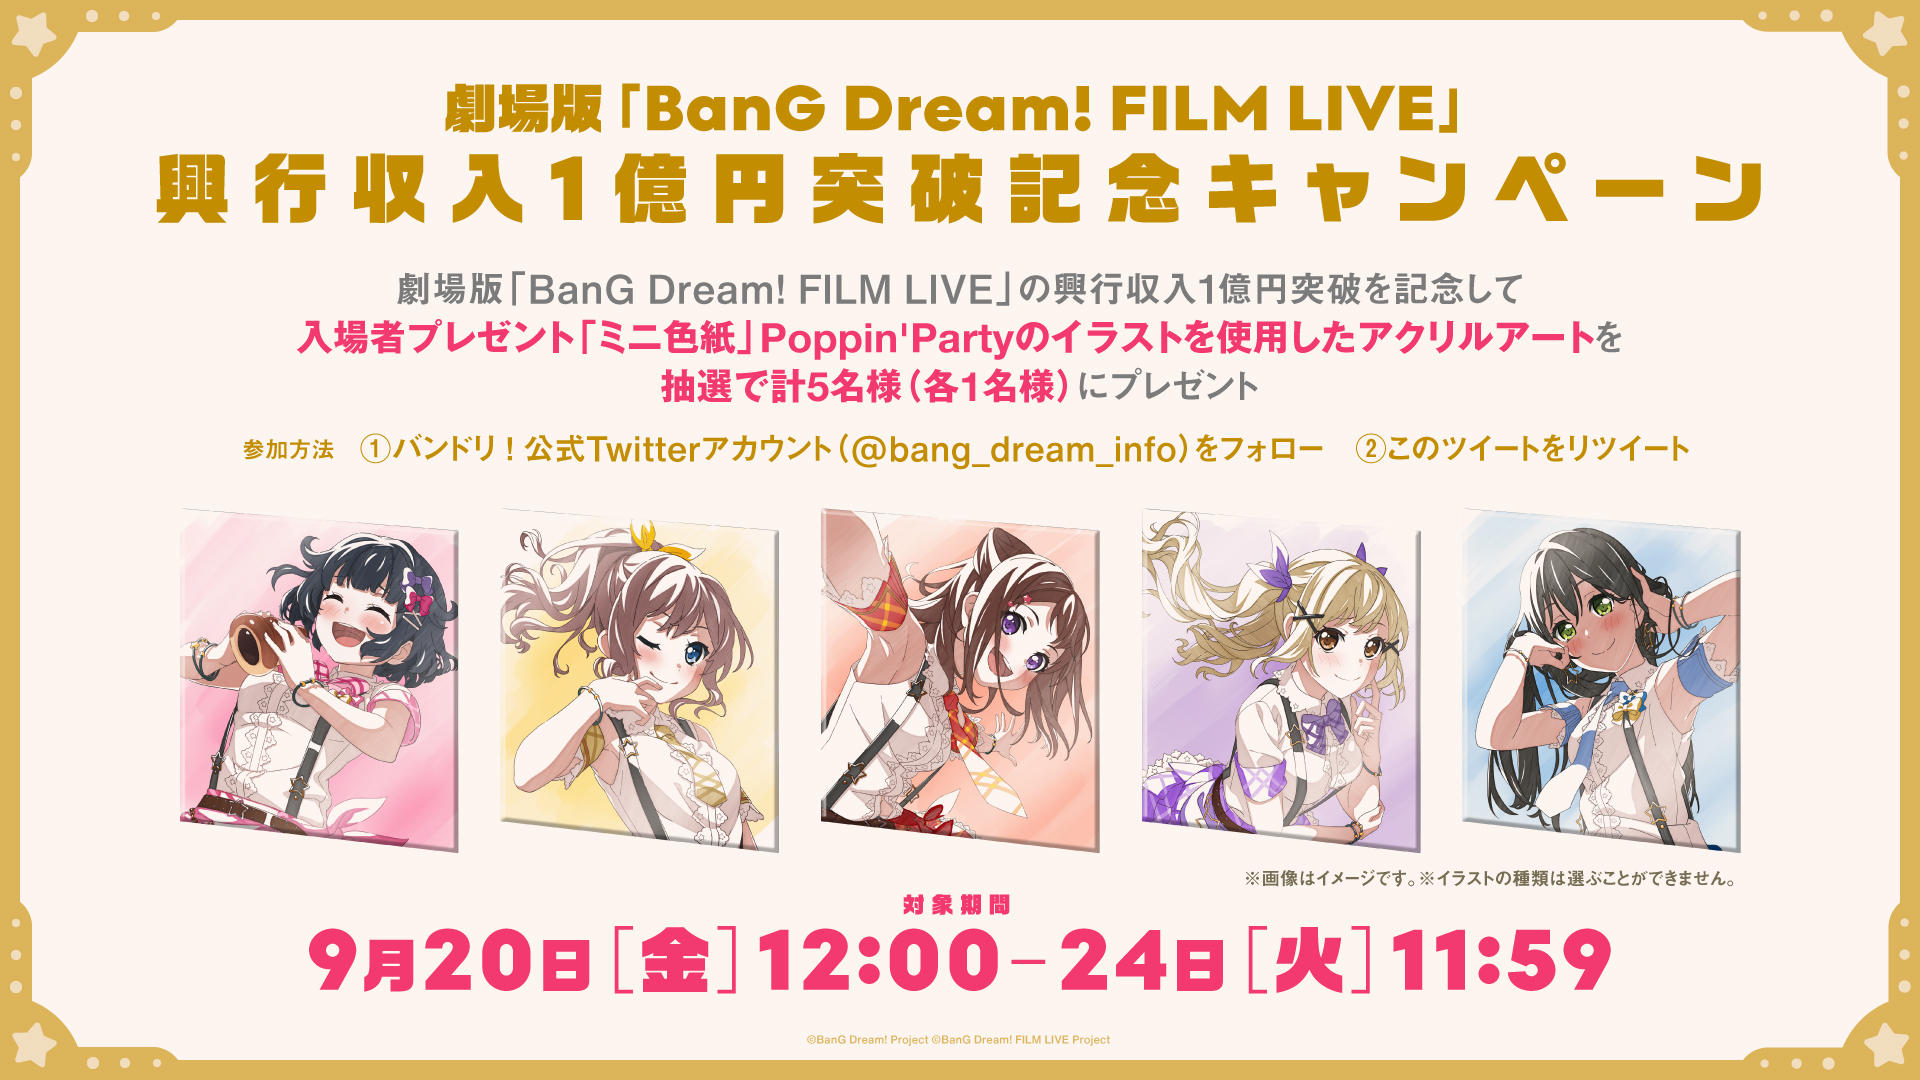 劇場版 Bang Dream Film Live 入場者プレゼント情報 本日9月20日